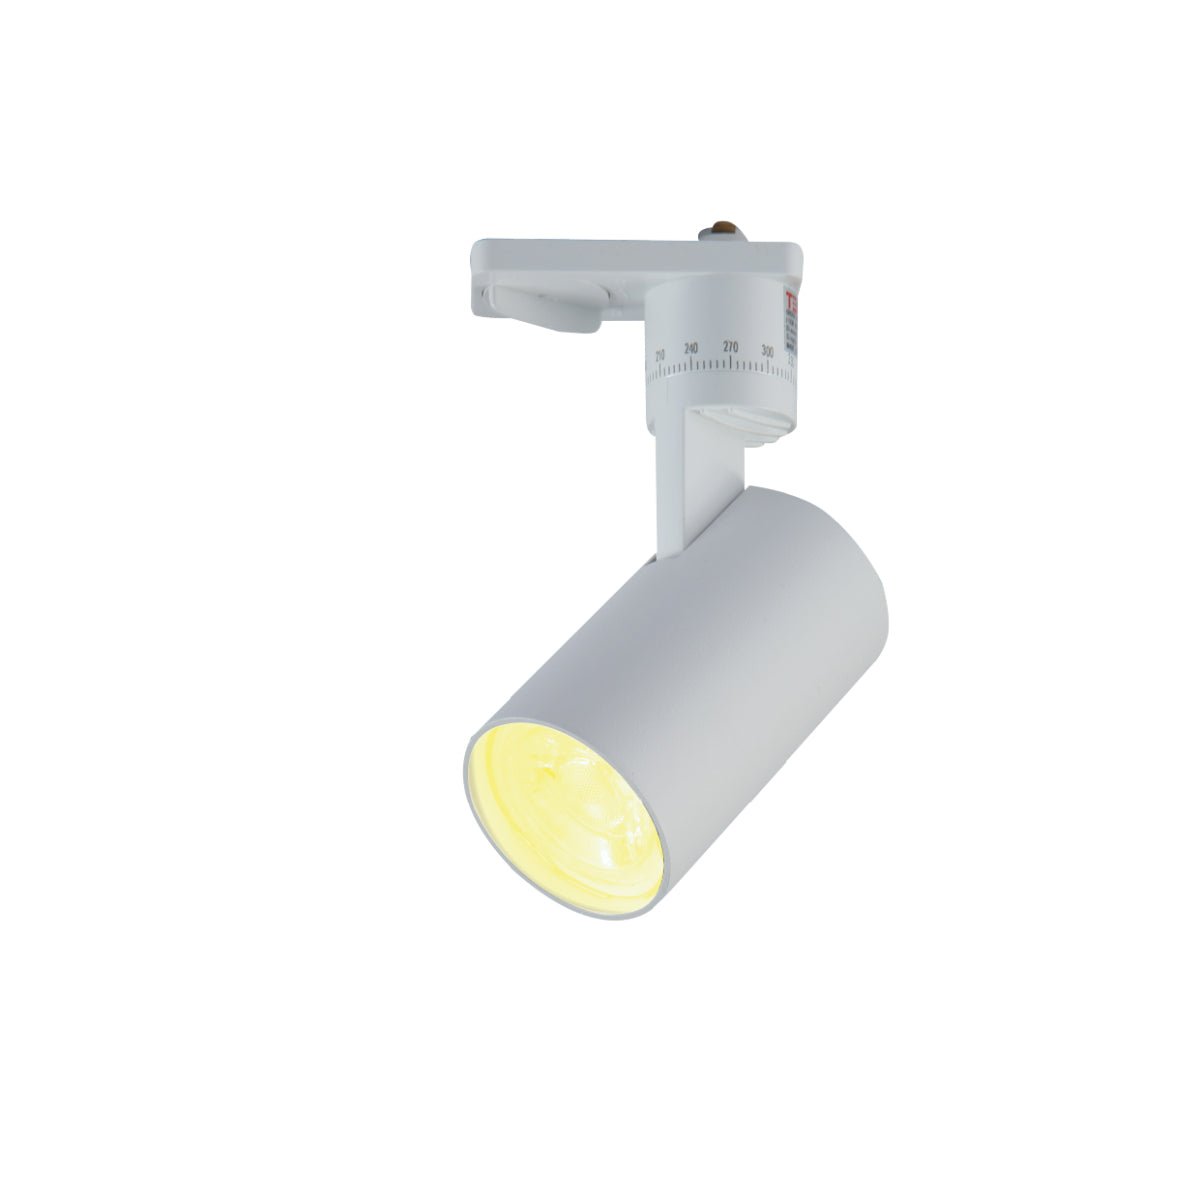 Main image of Diecast Tracklight Spotlight Single Line GU10 White | TEKLED 174-03992